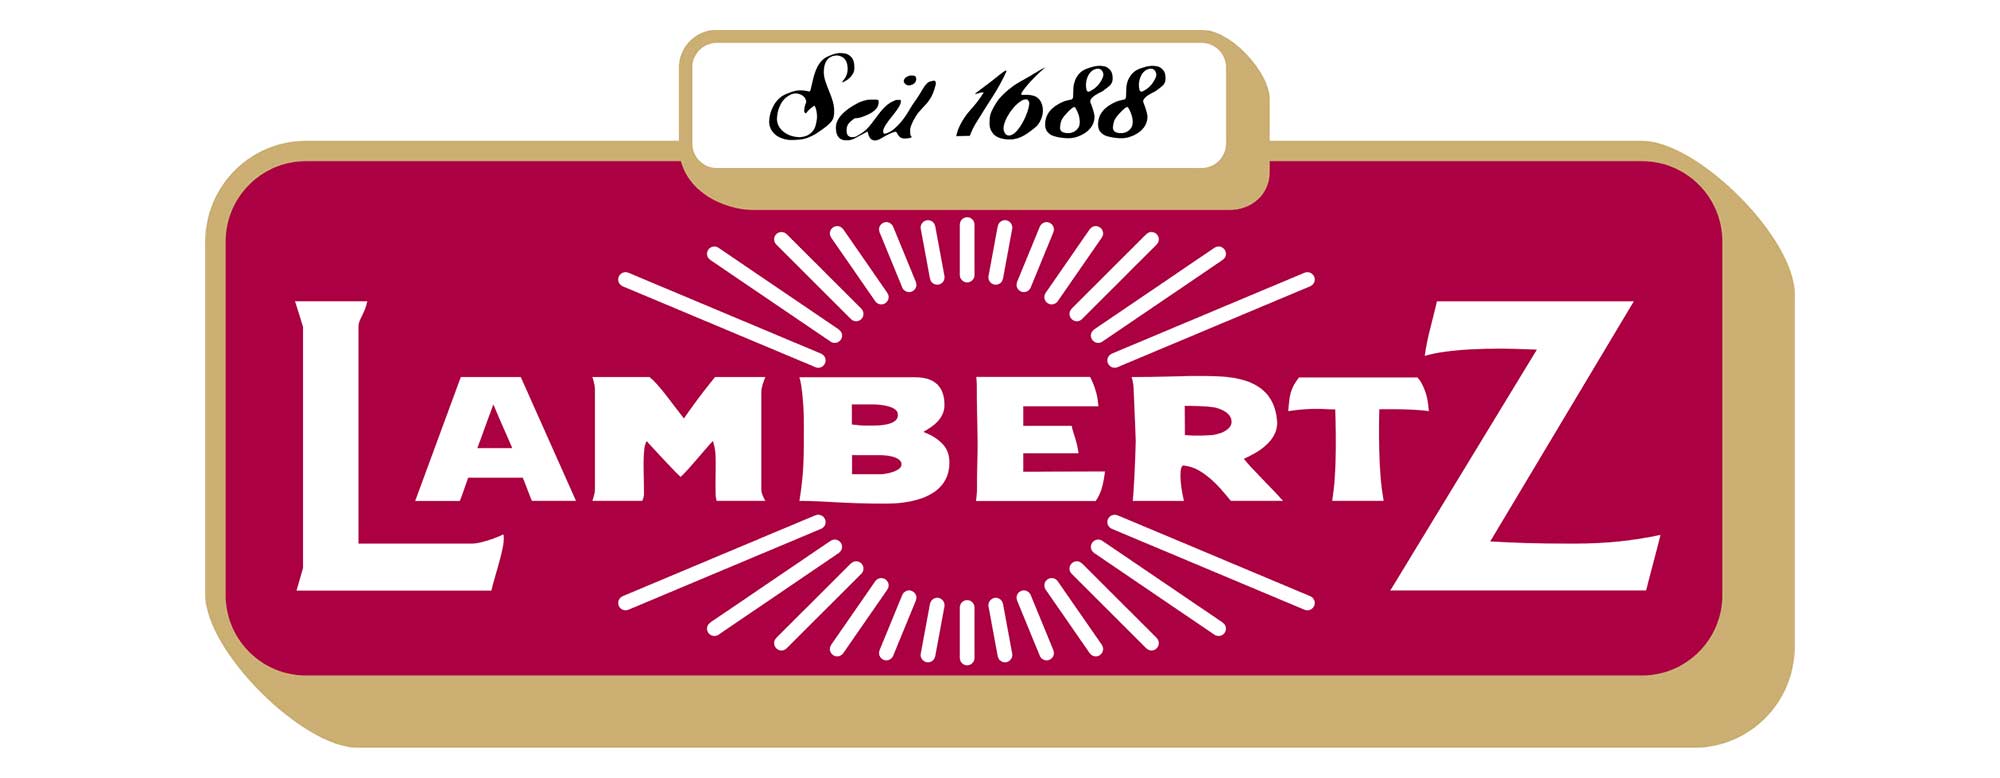 Lambertz-Logo